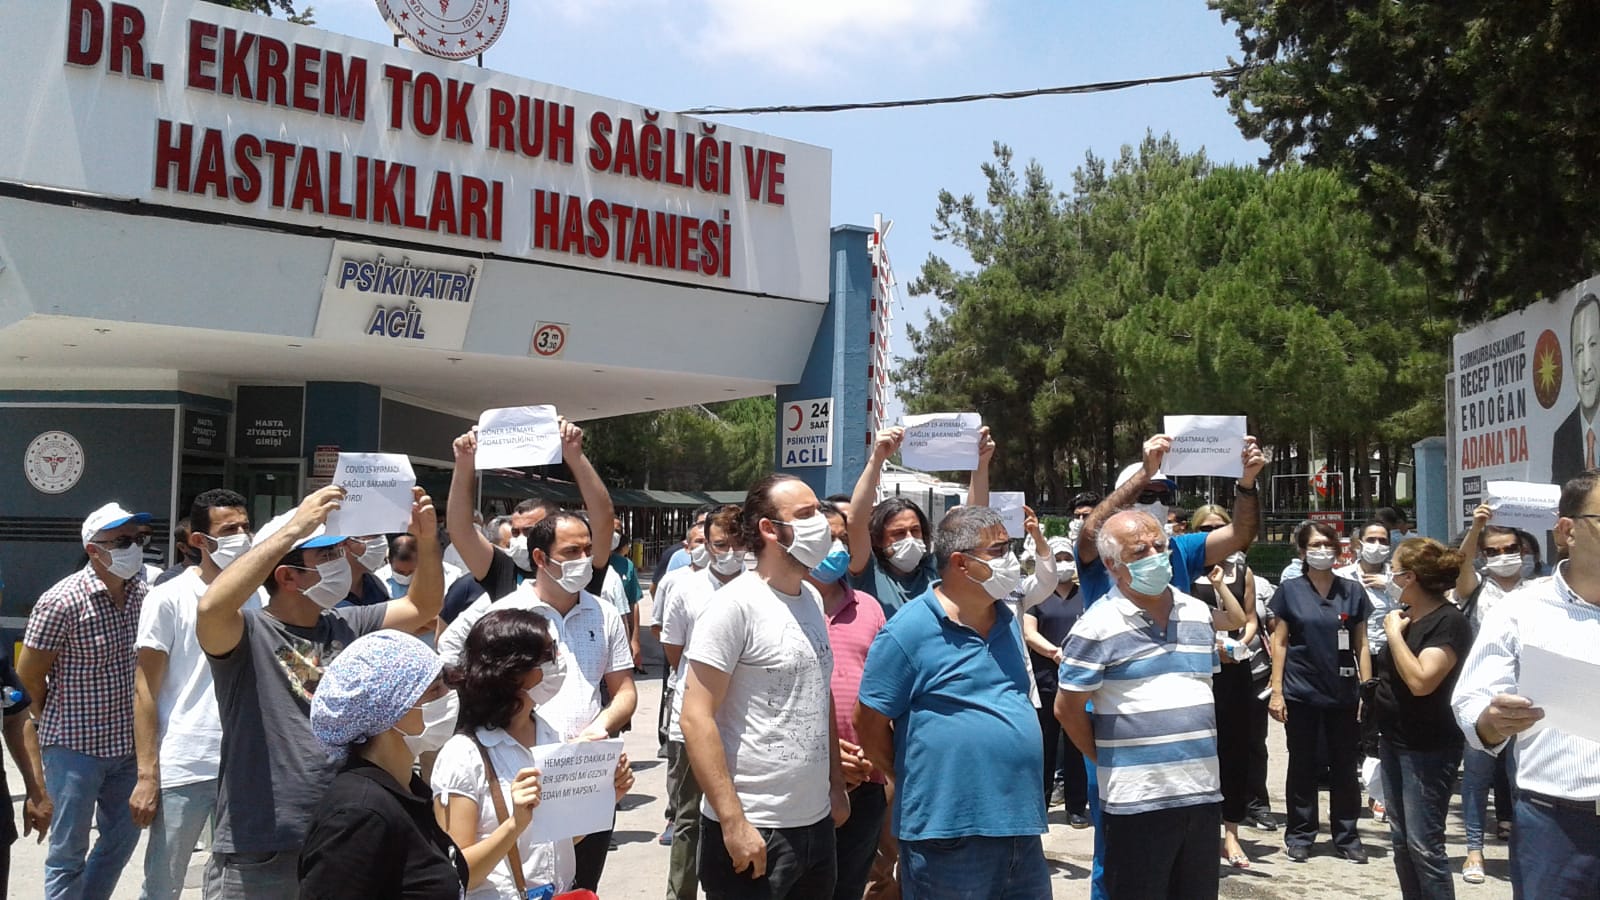 Adana Şubemiz ve Tabip Odası: Dr. Ekrem Tok Ruh Sağlığı ve Hastalıkları Hastanesi'ndeki Sorunlar Çözülsün